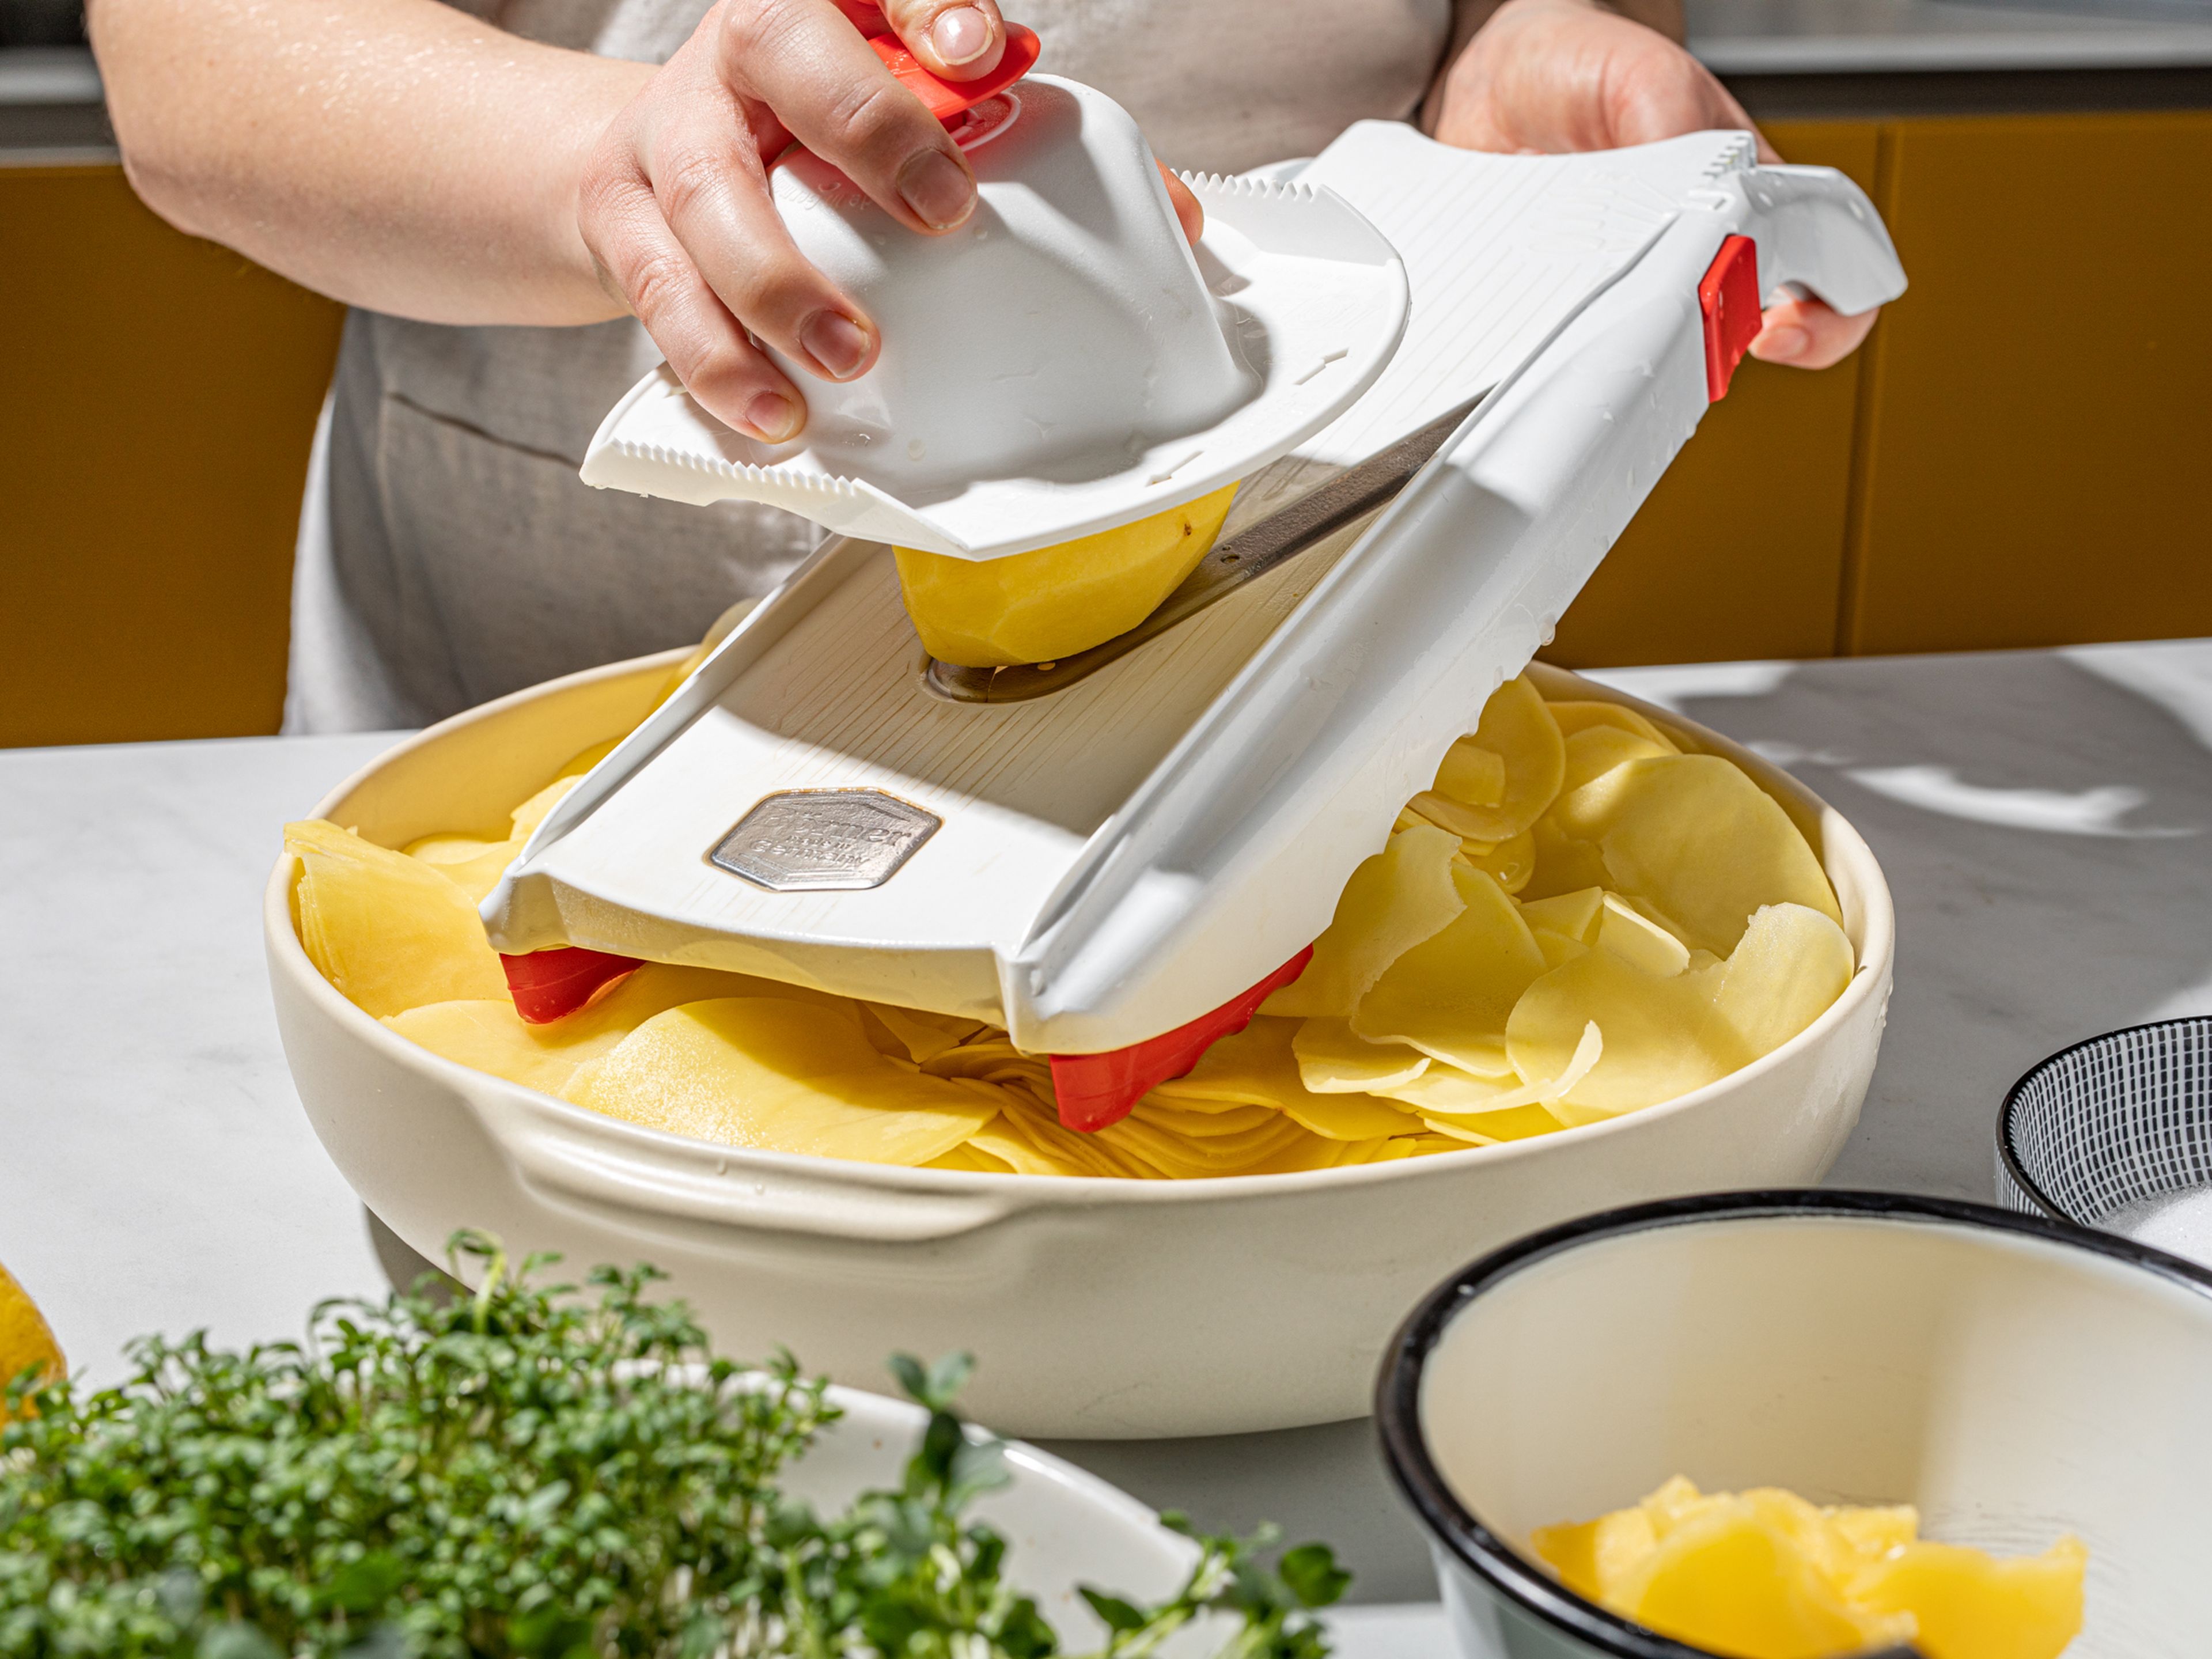 Den Butterschmalz in einem kleinen Topf erhitzen, bis er flüssig ist. Nun die Kartoffeln der Länge nach auf der dünnsten Stufe hobeln und in eine große Schüssel geben. Den Butterschmalz dazugeben und alles gut vermischen. Den Backofen auf 160°C vorheizen.